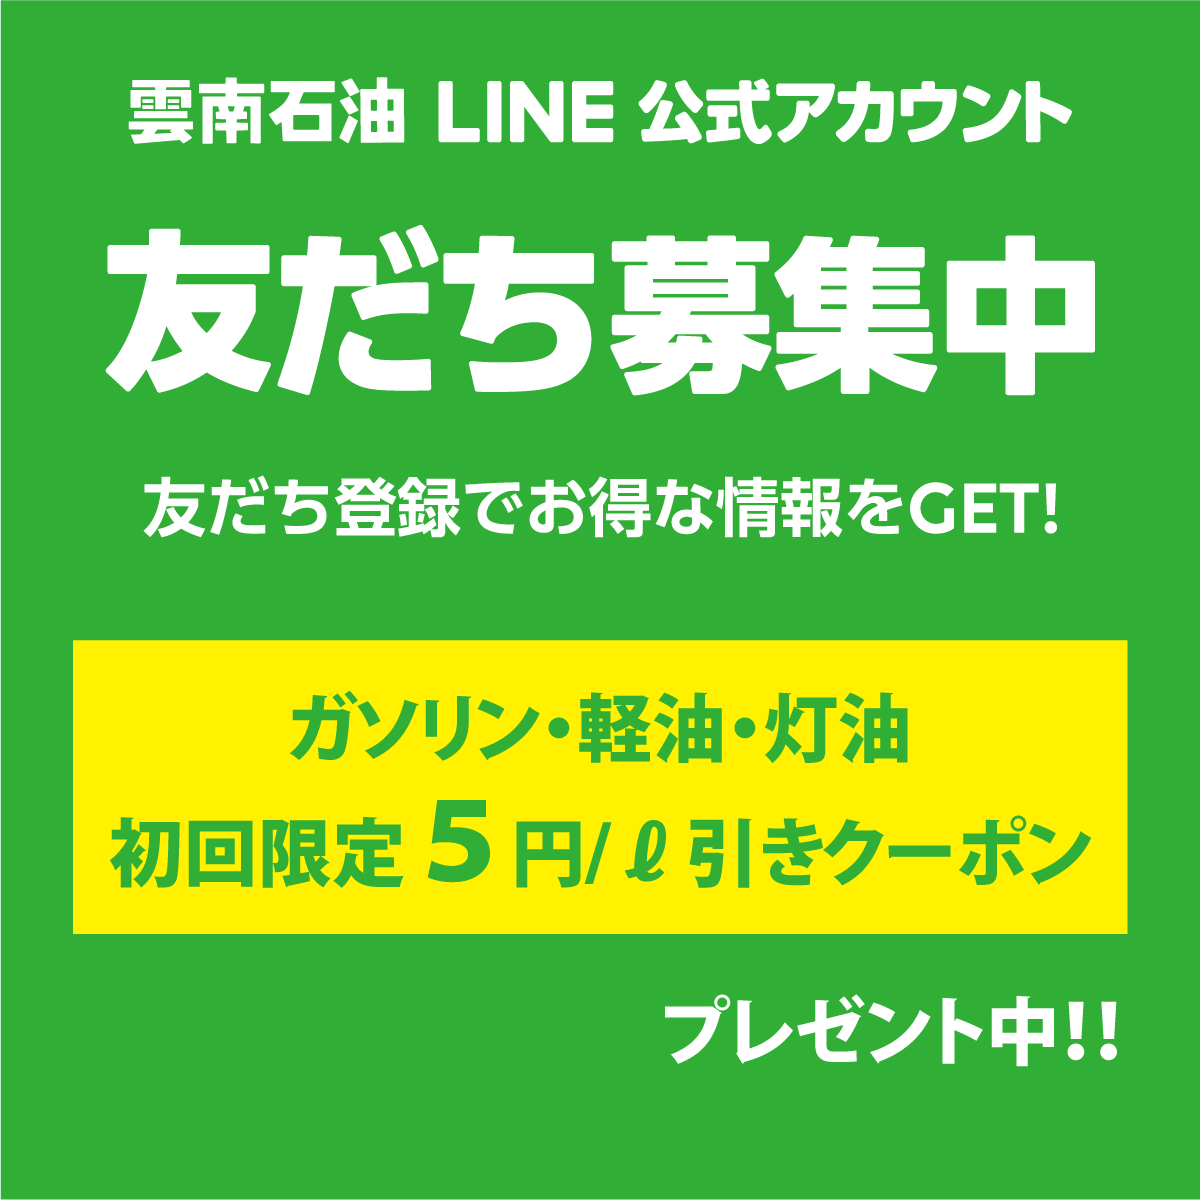 雲南石油LINE公式アカウント